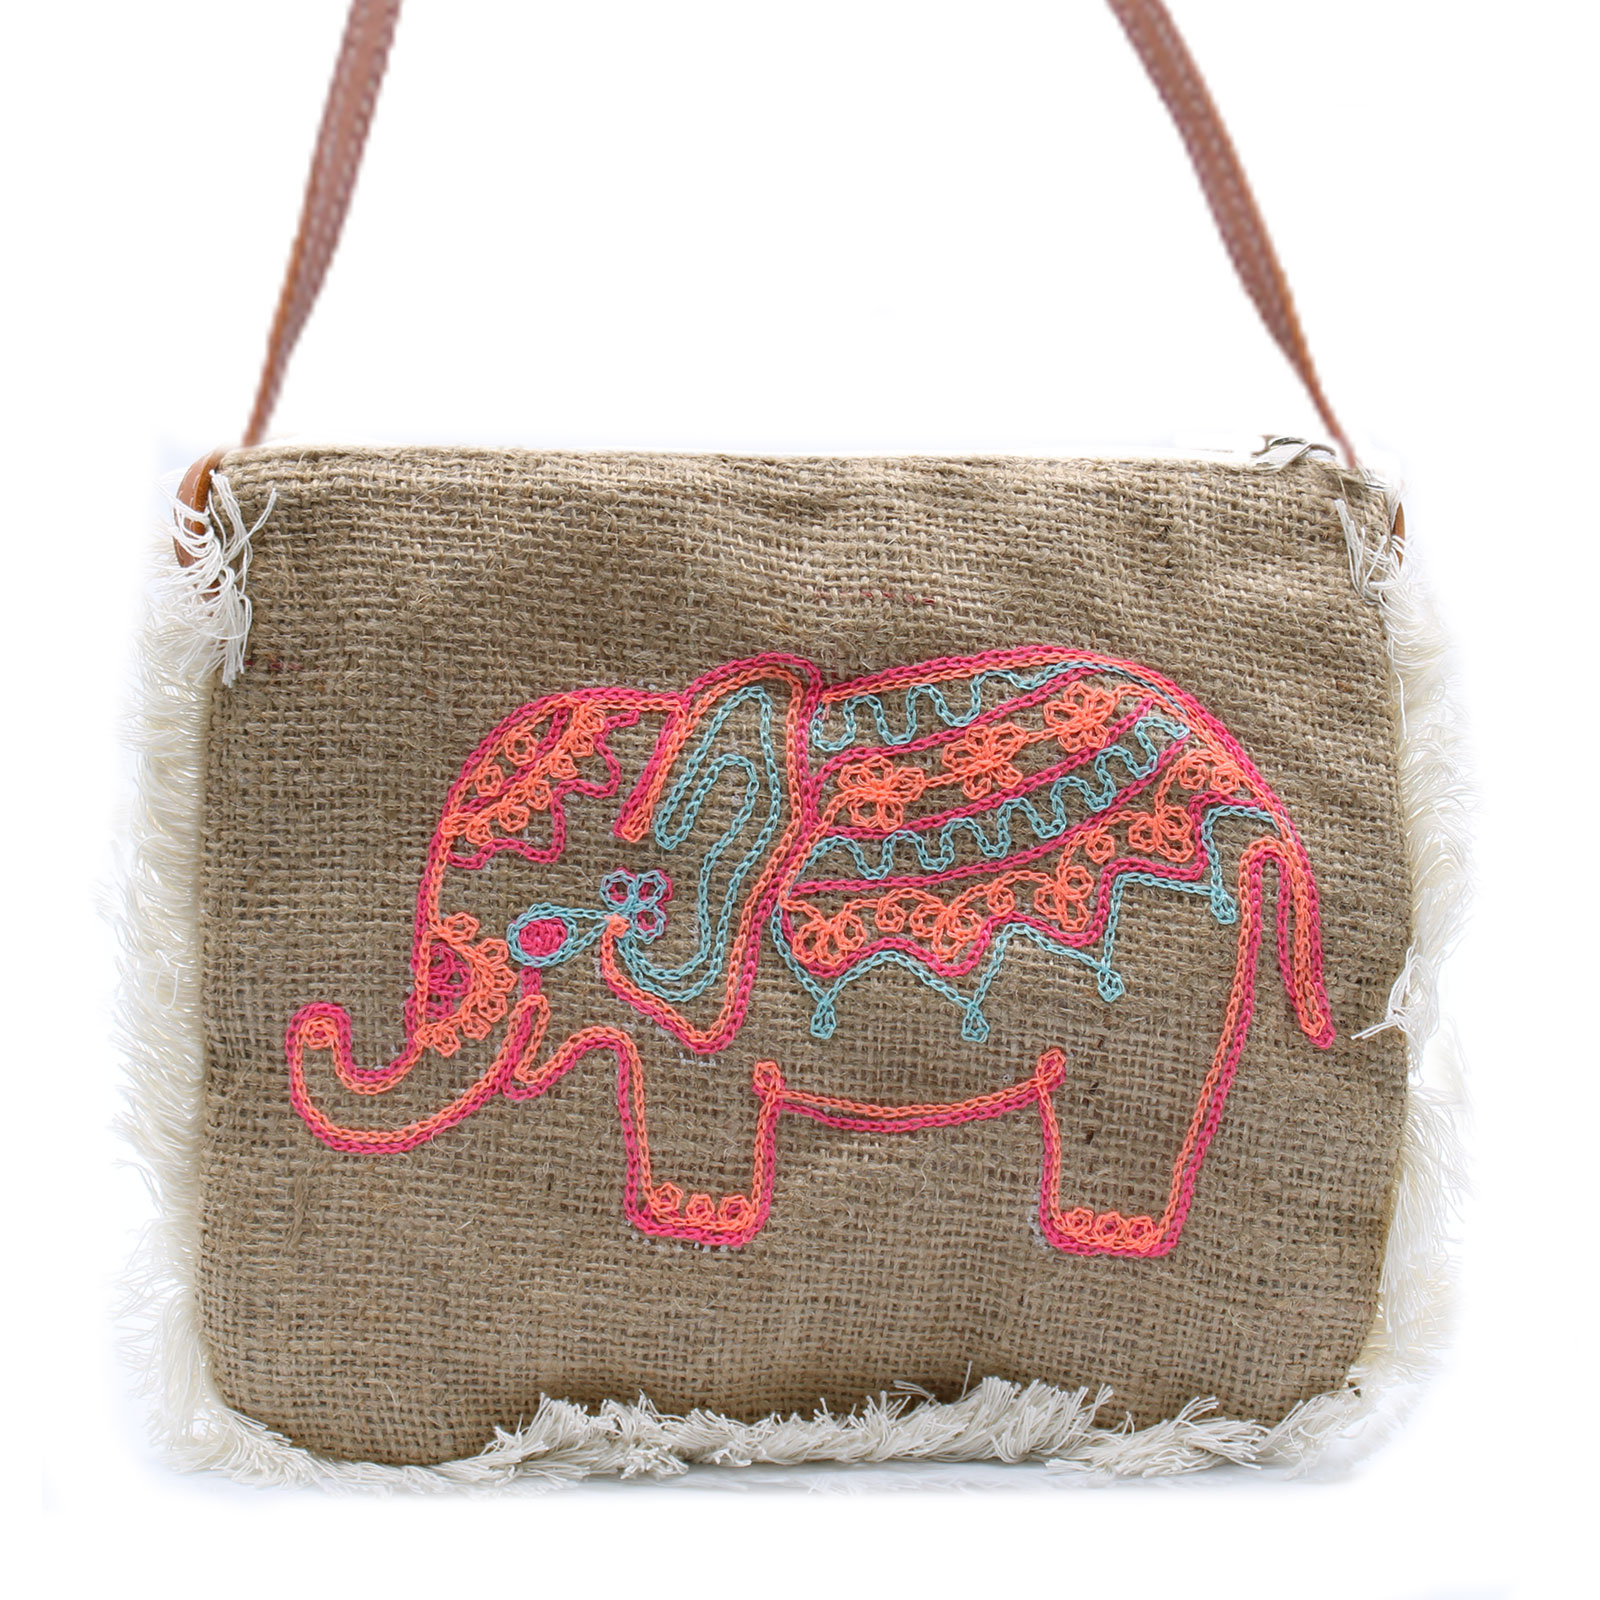 Fab Fringe Bag - Elephant Embroidery